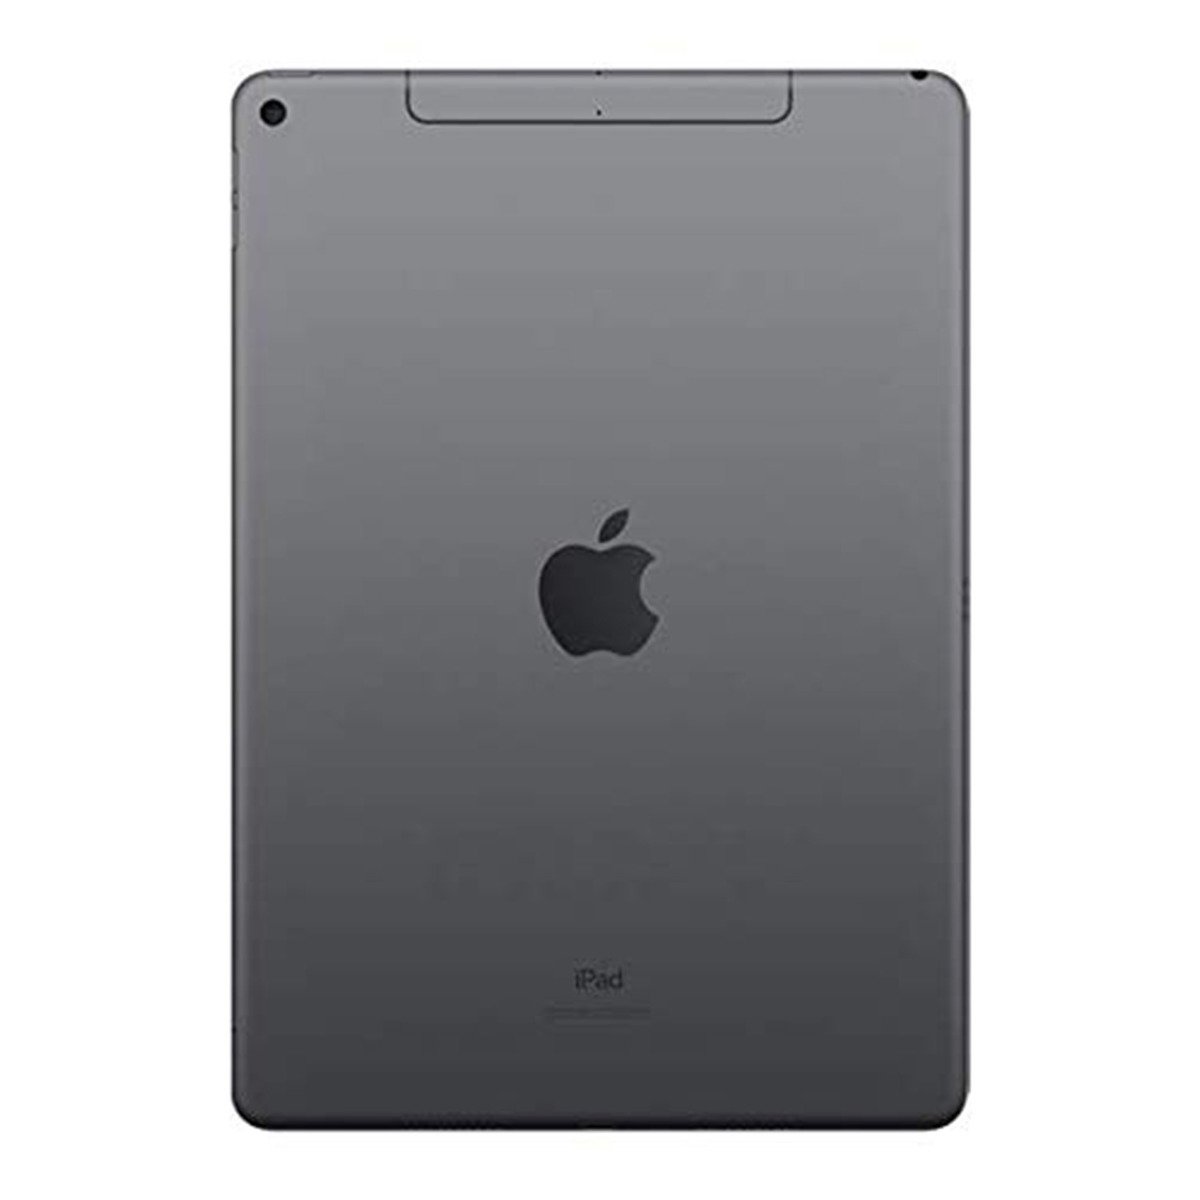 Apple iPad Air (2019) - iOS (Wi-Fi + Cellular, 256GB)10.5inch Space Grey